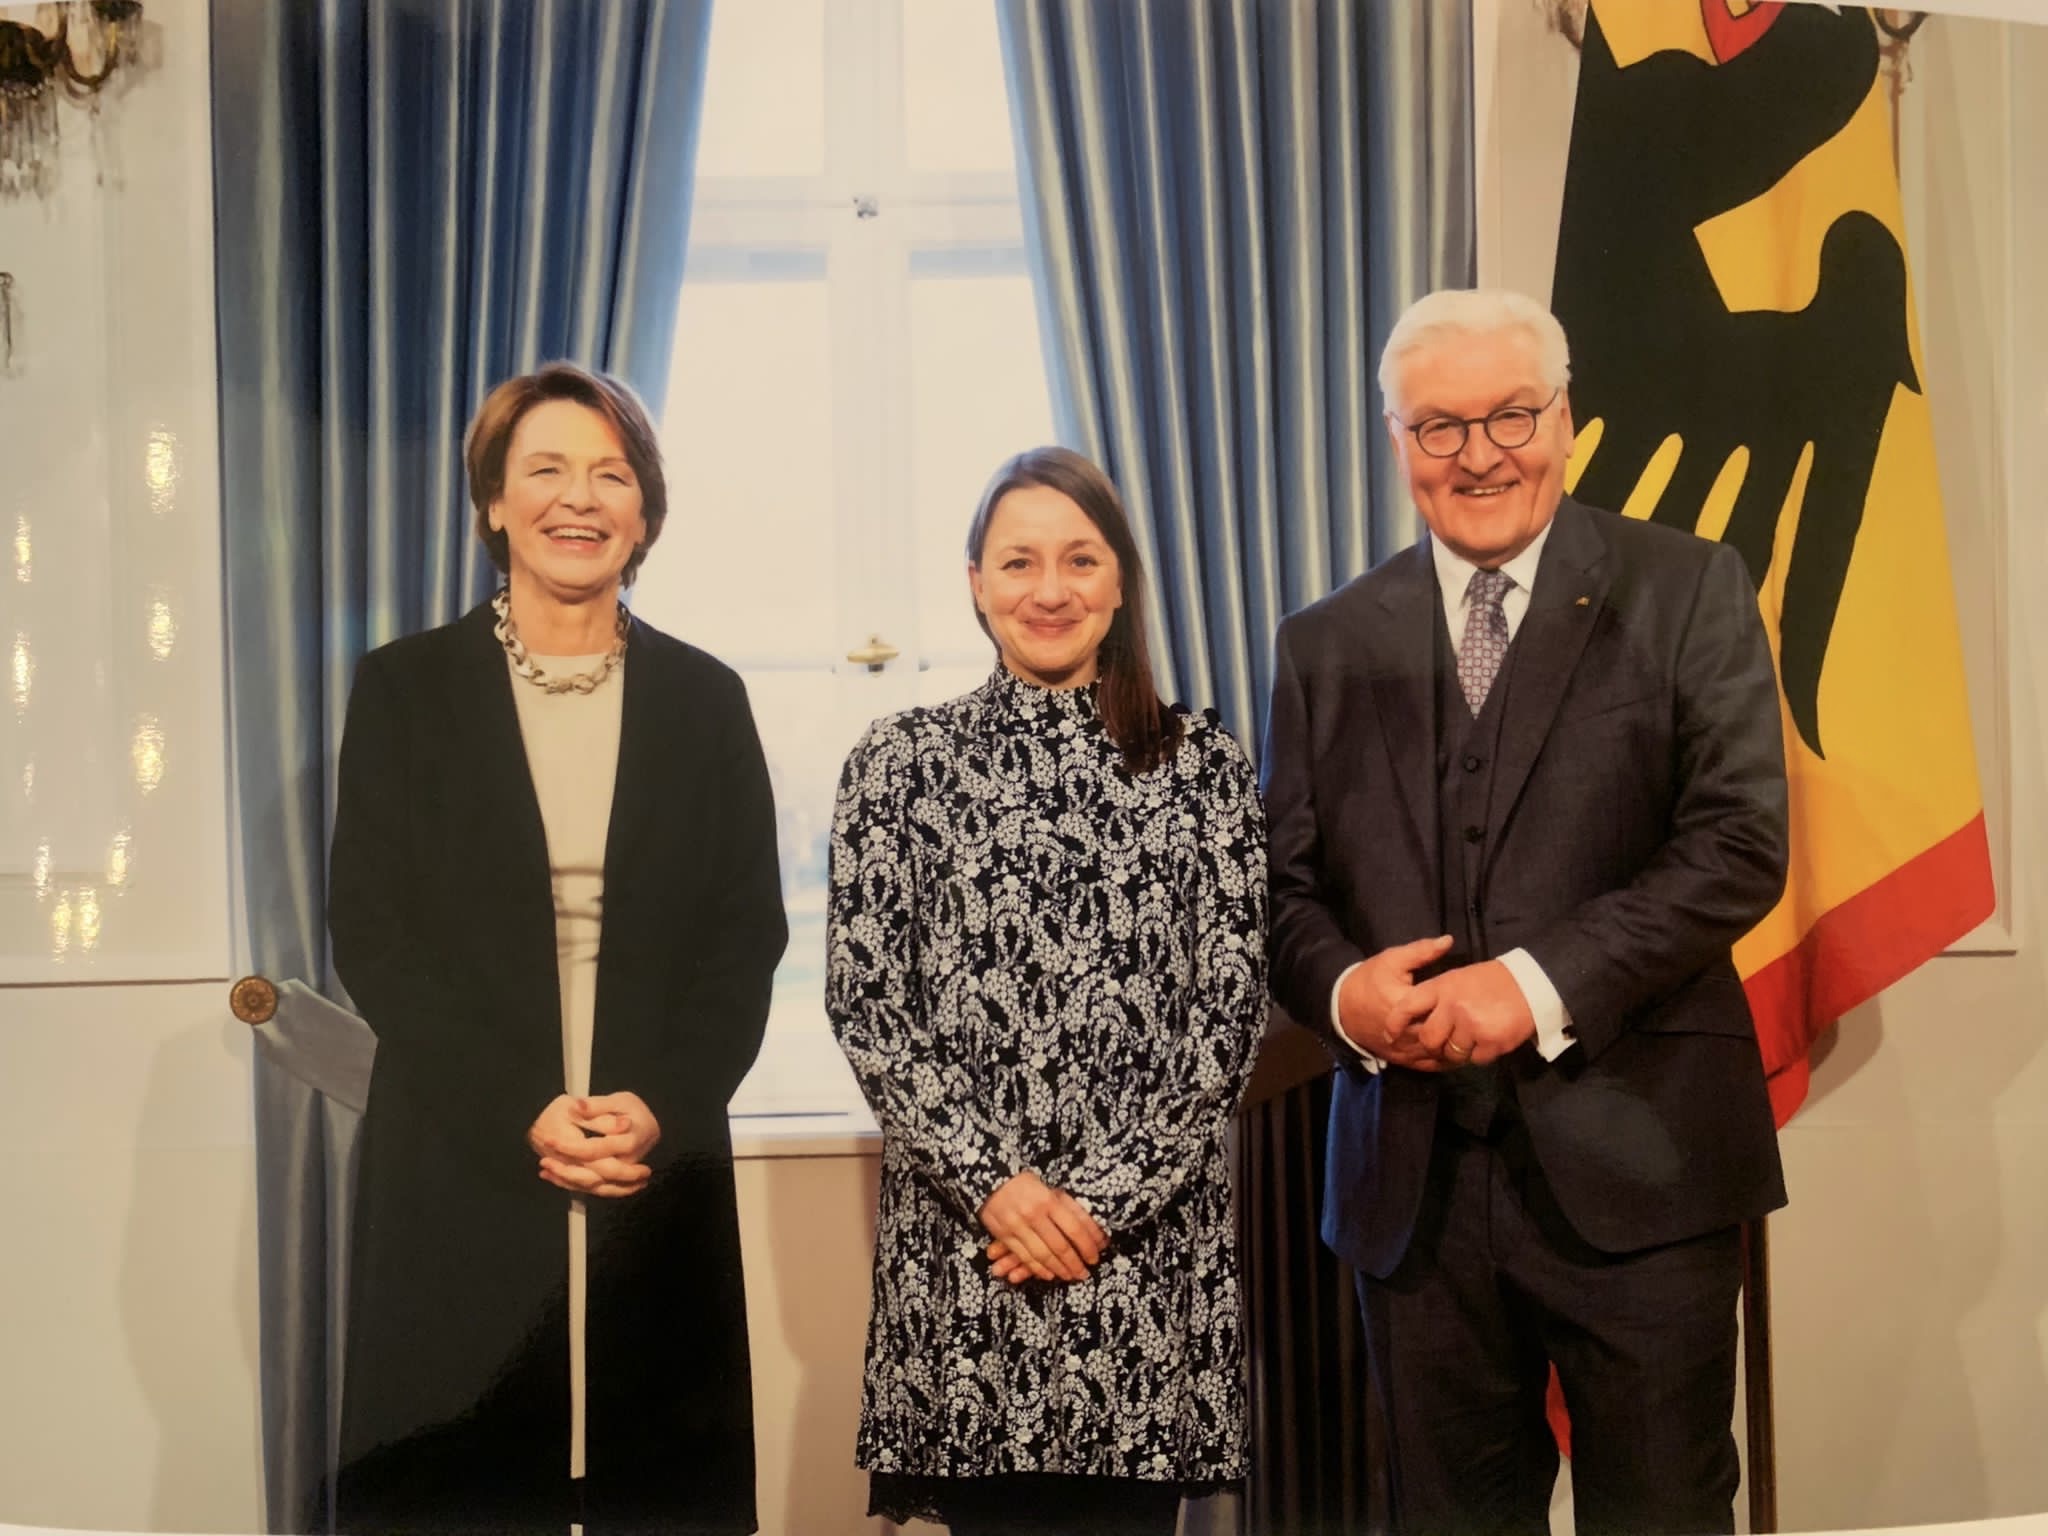 Im Bild sind drei Personen zu sehen: Bundespräsident Frank-Walter Steinmeier und seine Ehefrau Elke Bündenbender sowie in der Mitte Romy Hoppe